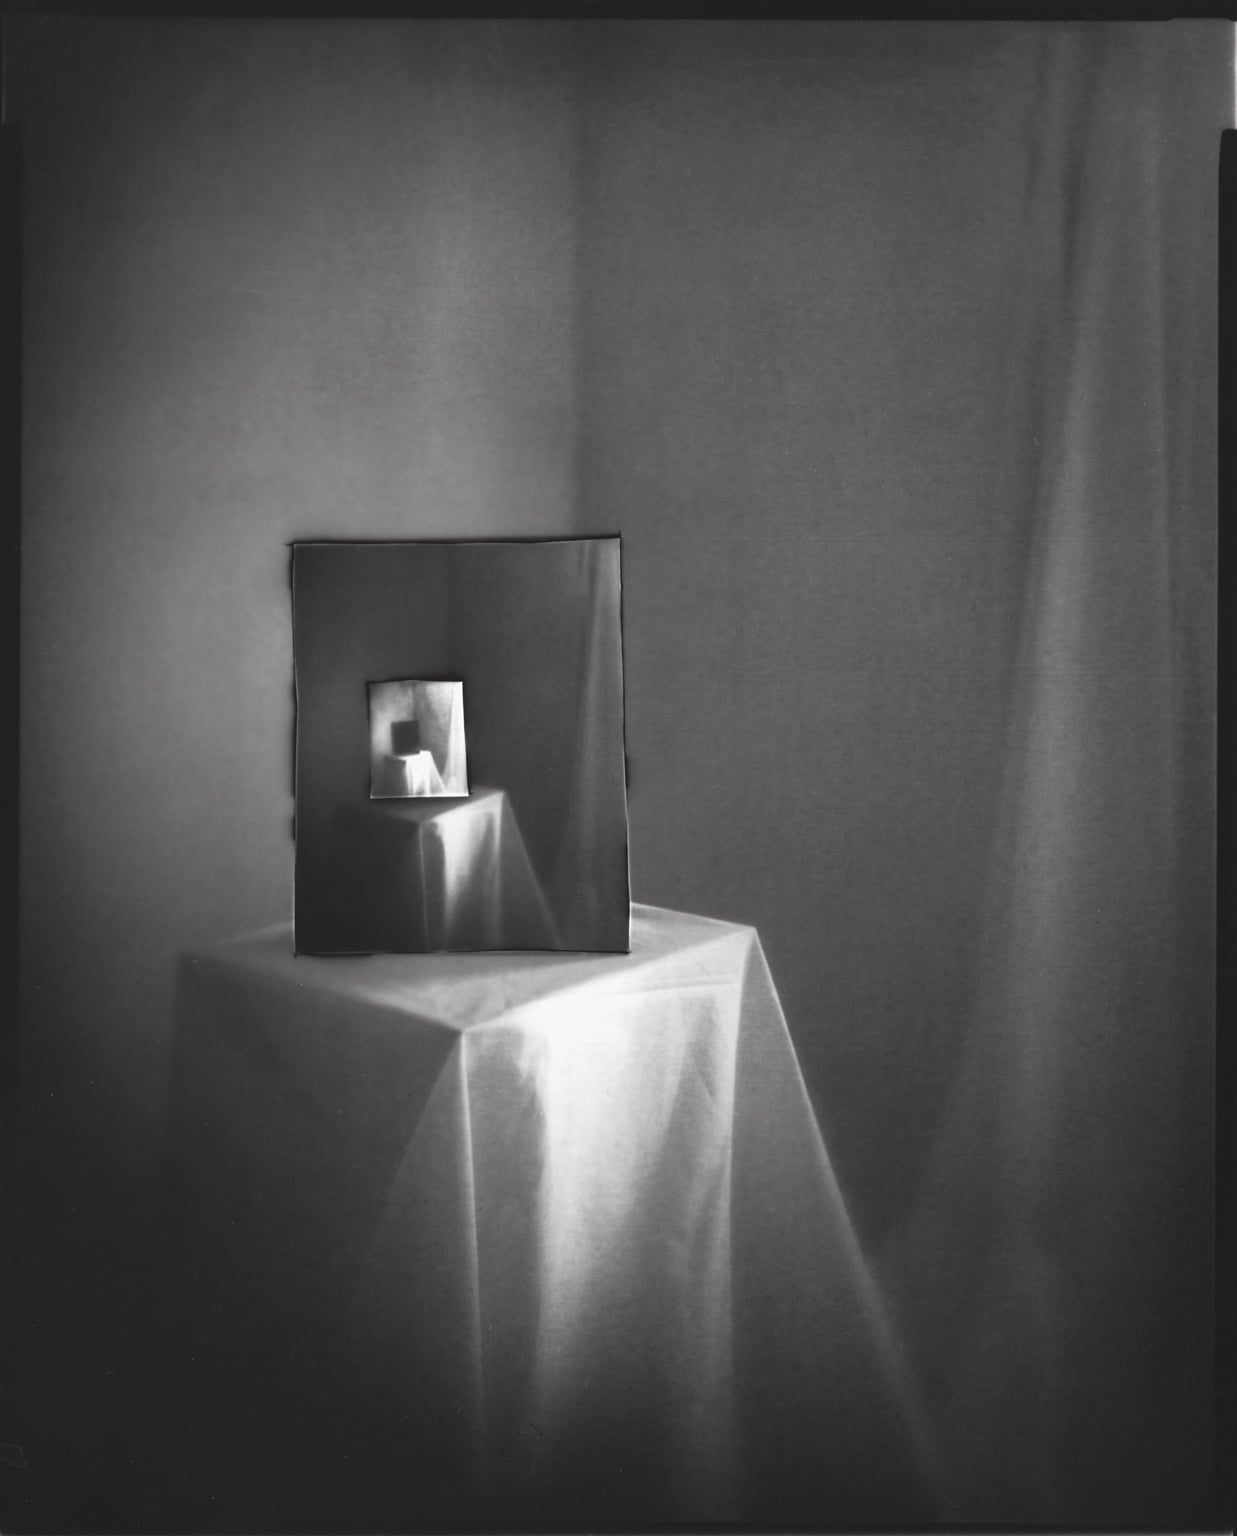 Tine Edel | Im Spiegel, 2017 | Belichtung eines 8 x10“ Papiernegativ, 24 x 30 cm analoges Fotopapier von Ilford